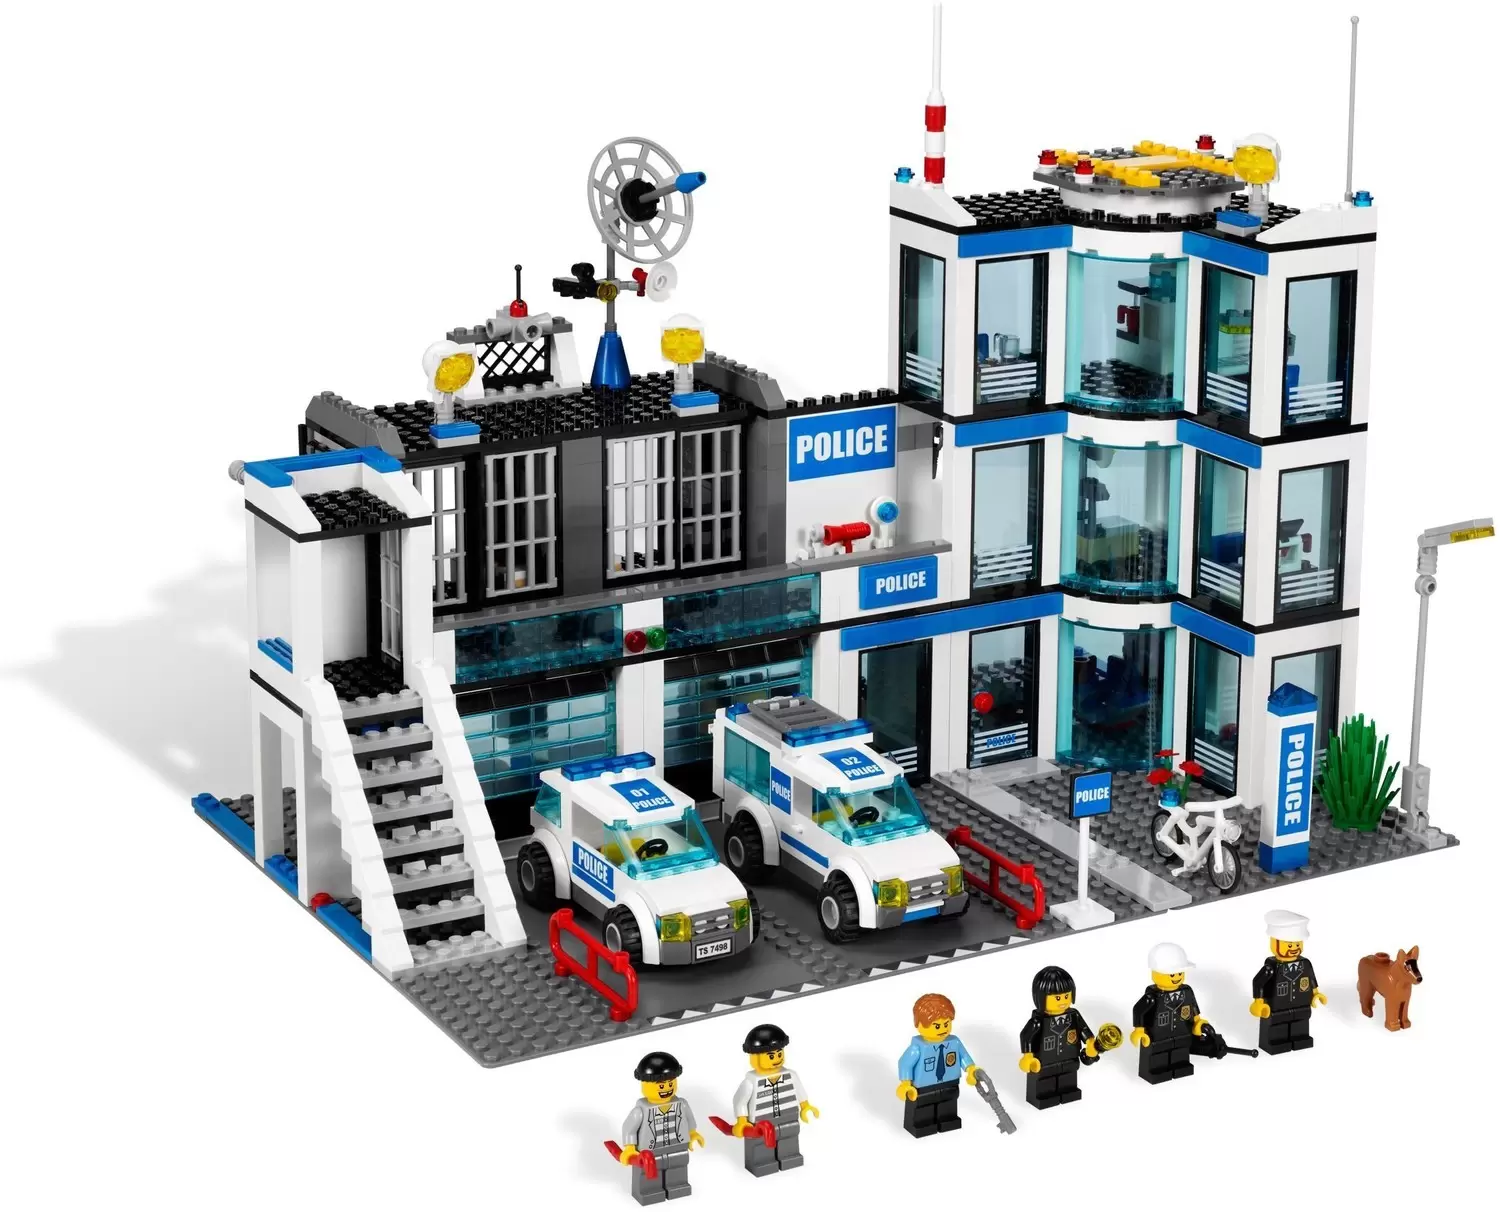 Station LEGO set 7498